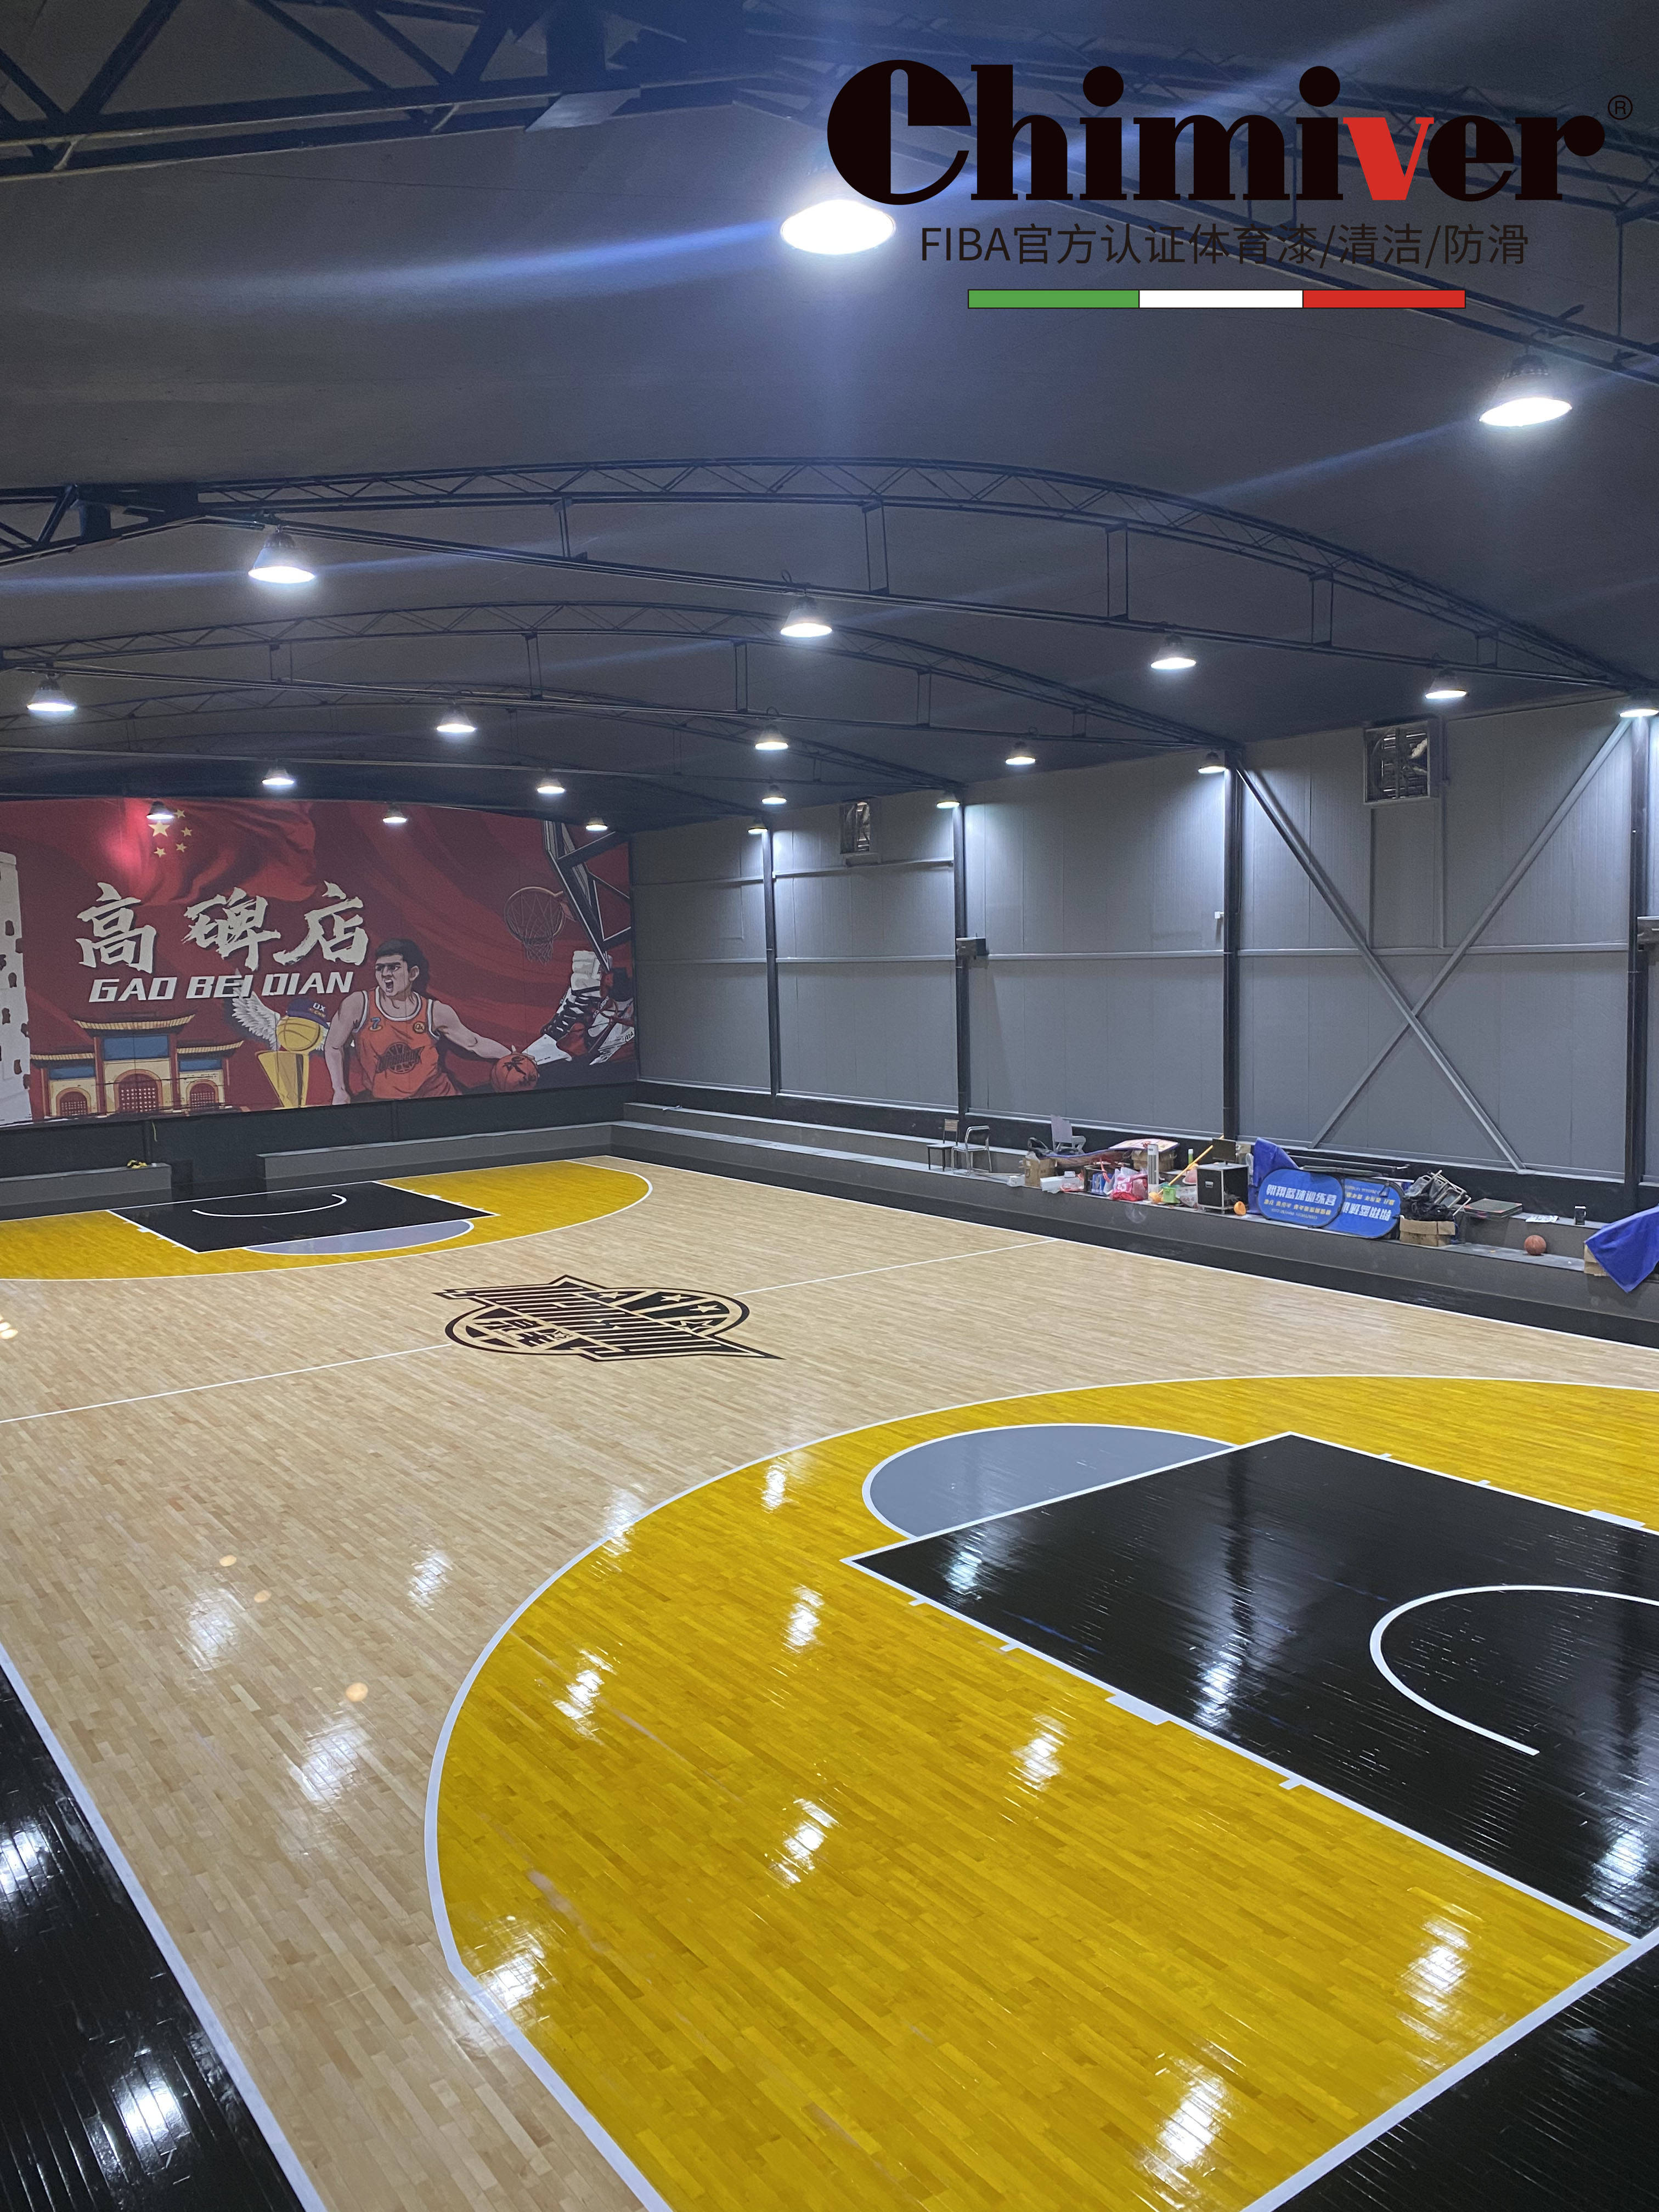 篮球场地板翻新改造施工效果:篮球场地板有轻微瓦变及隆起现象